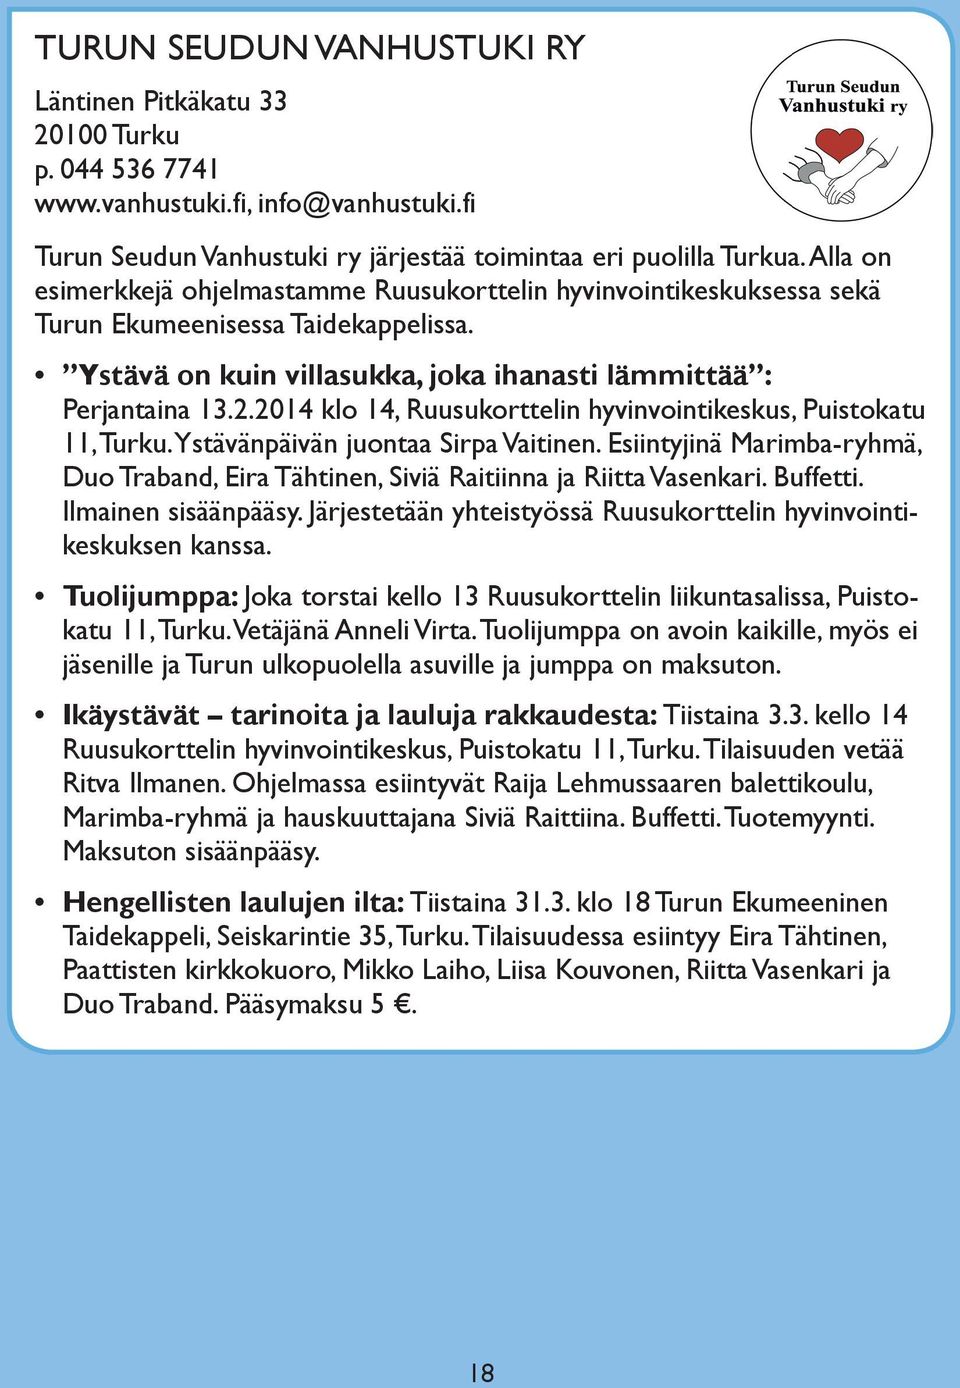 2014 klo 14, Ruusukorttelin hyvinvointikeskus, Puistokatu 11, Turku. Ystävänpäivän juontaa Sirpa Vaitinen. Esiintyjinä Marimba-ryhmä, Duo Traband, Eira Tähtinen, Siviä Raitiinna ja Riitta Vasenkari.